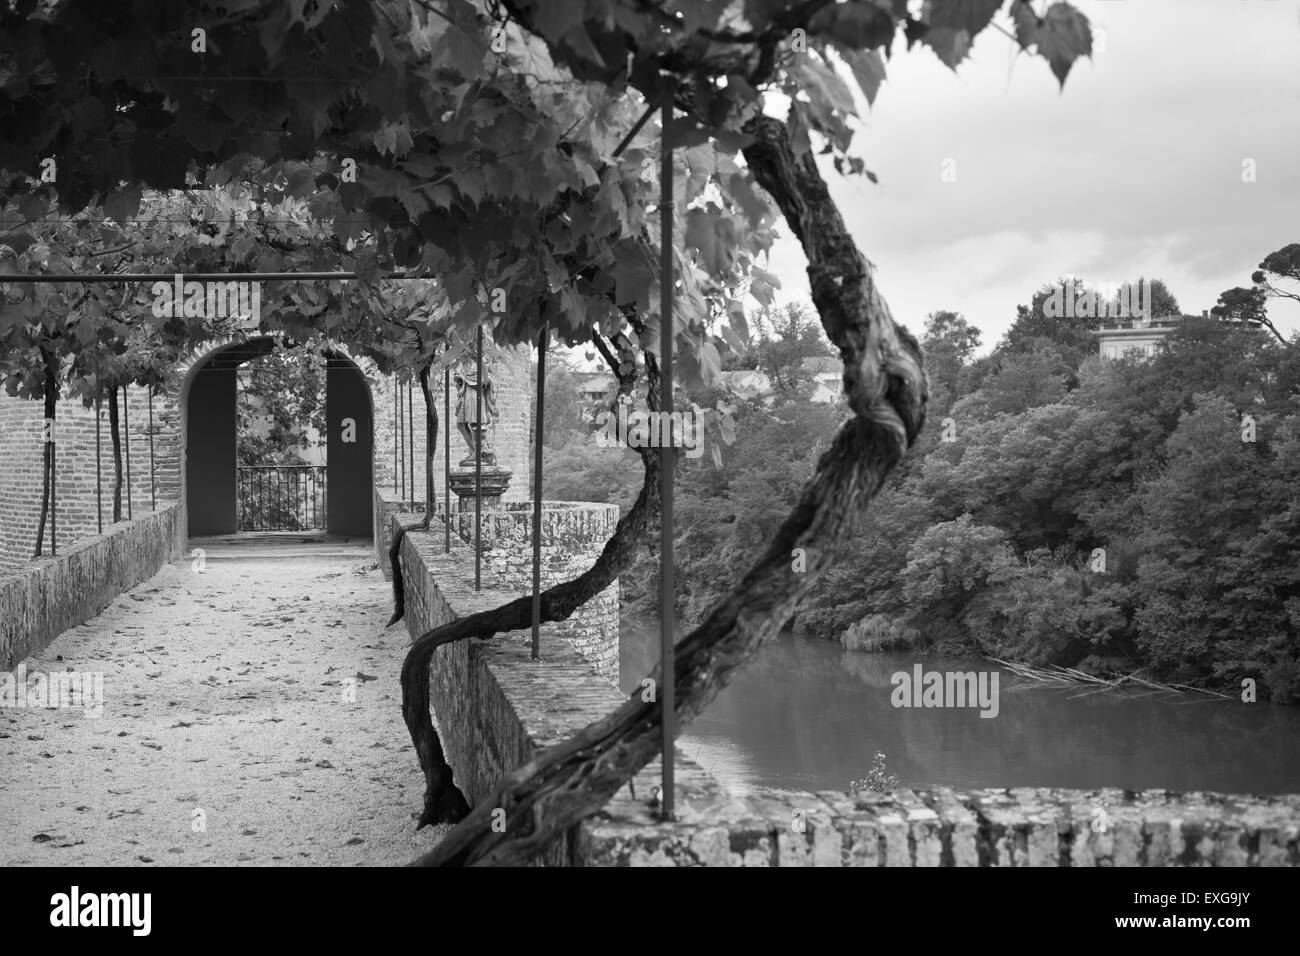 Palais de la Berbie Vicolo dei giardini a Albi, Tarn, Francia. Filtrata bw shot Foto Stock